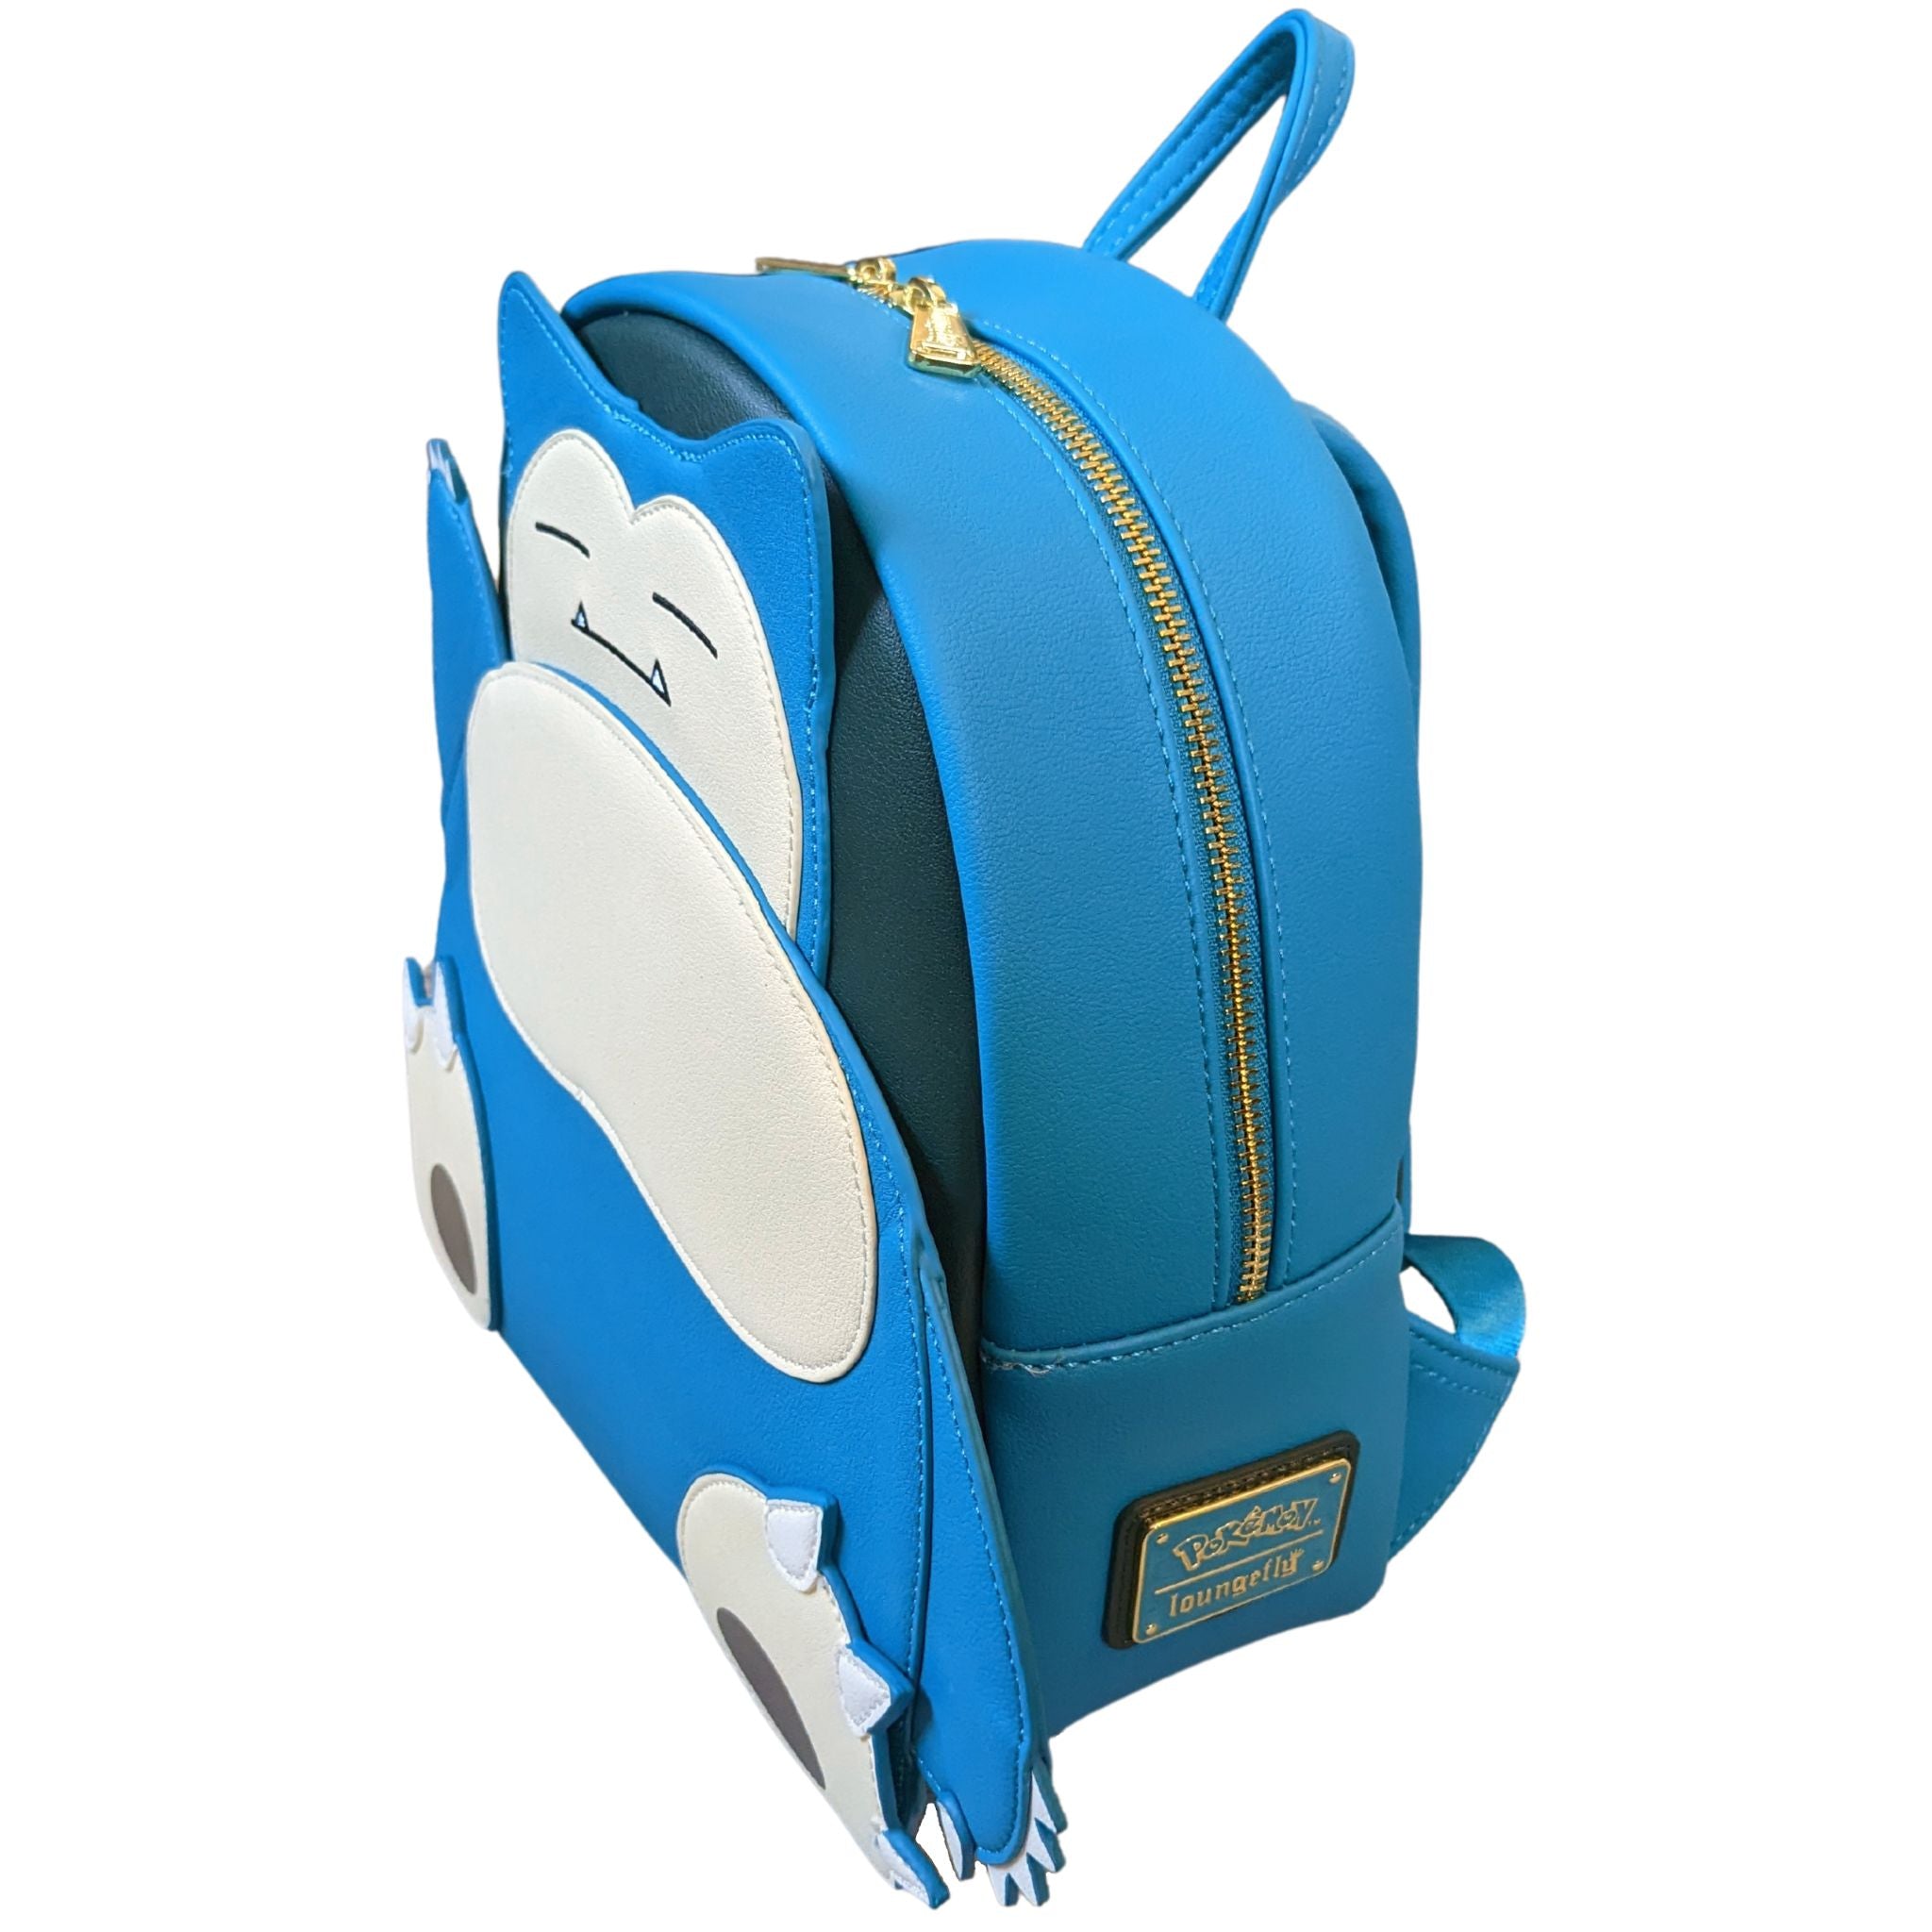 Loungefly Pokemon Backpacks